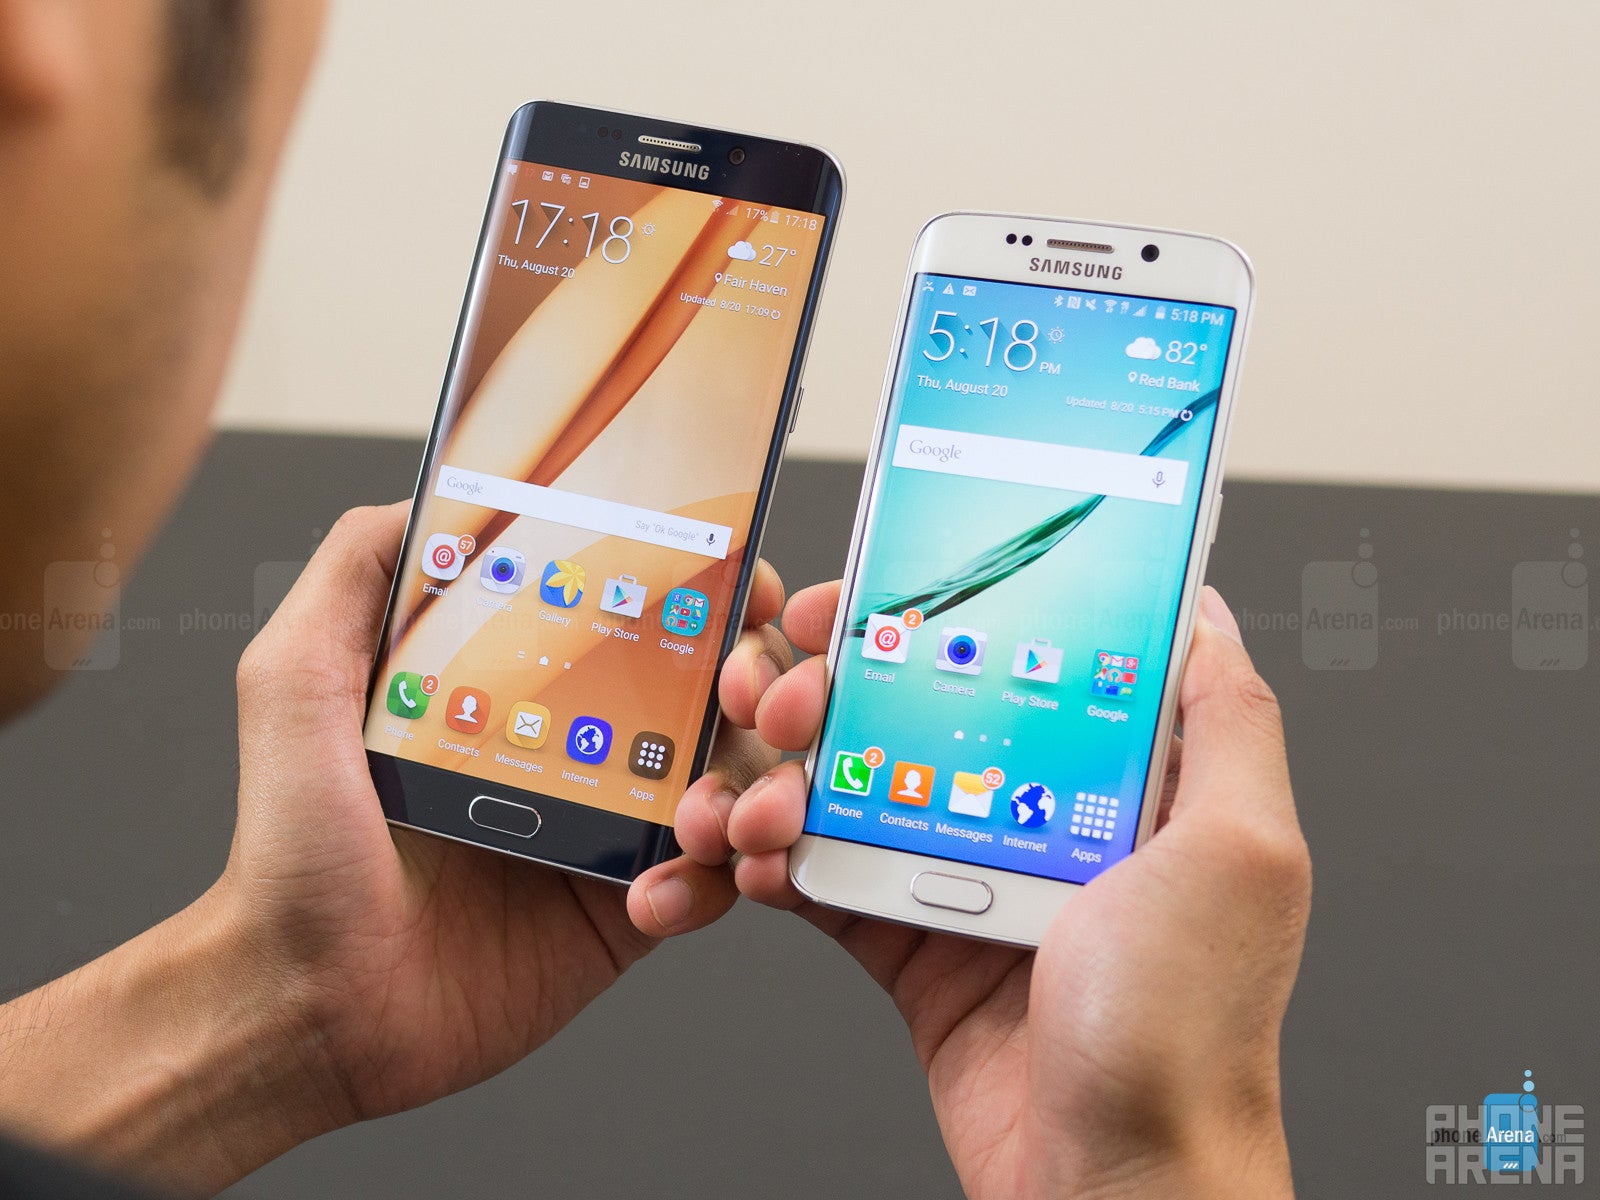 Samsung Galaxy S6 edge+ vs Samsung Galaxy S6 edge